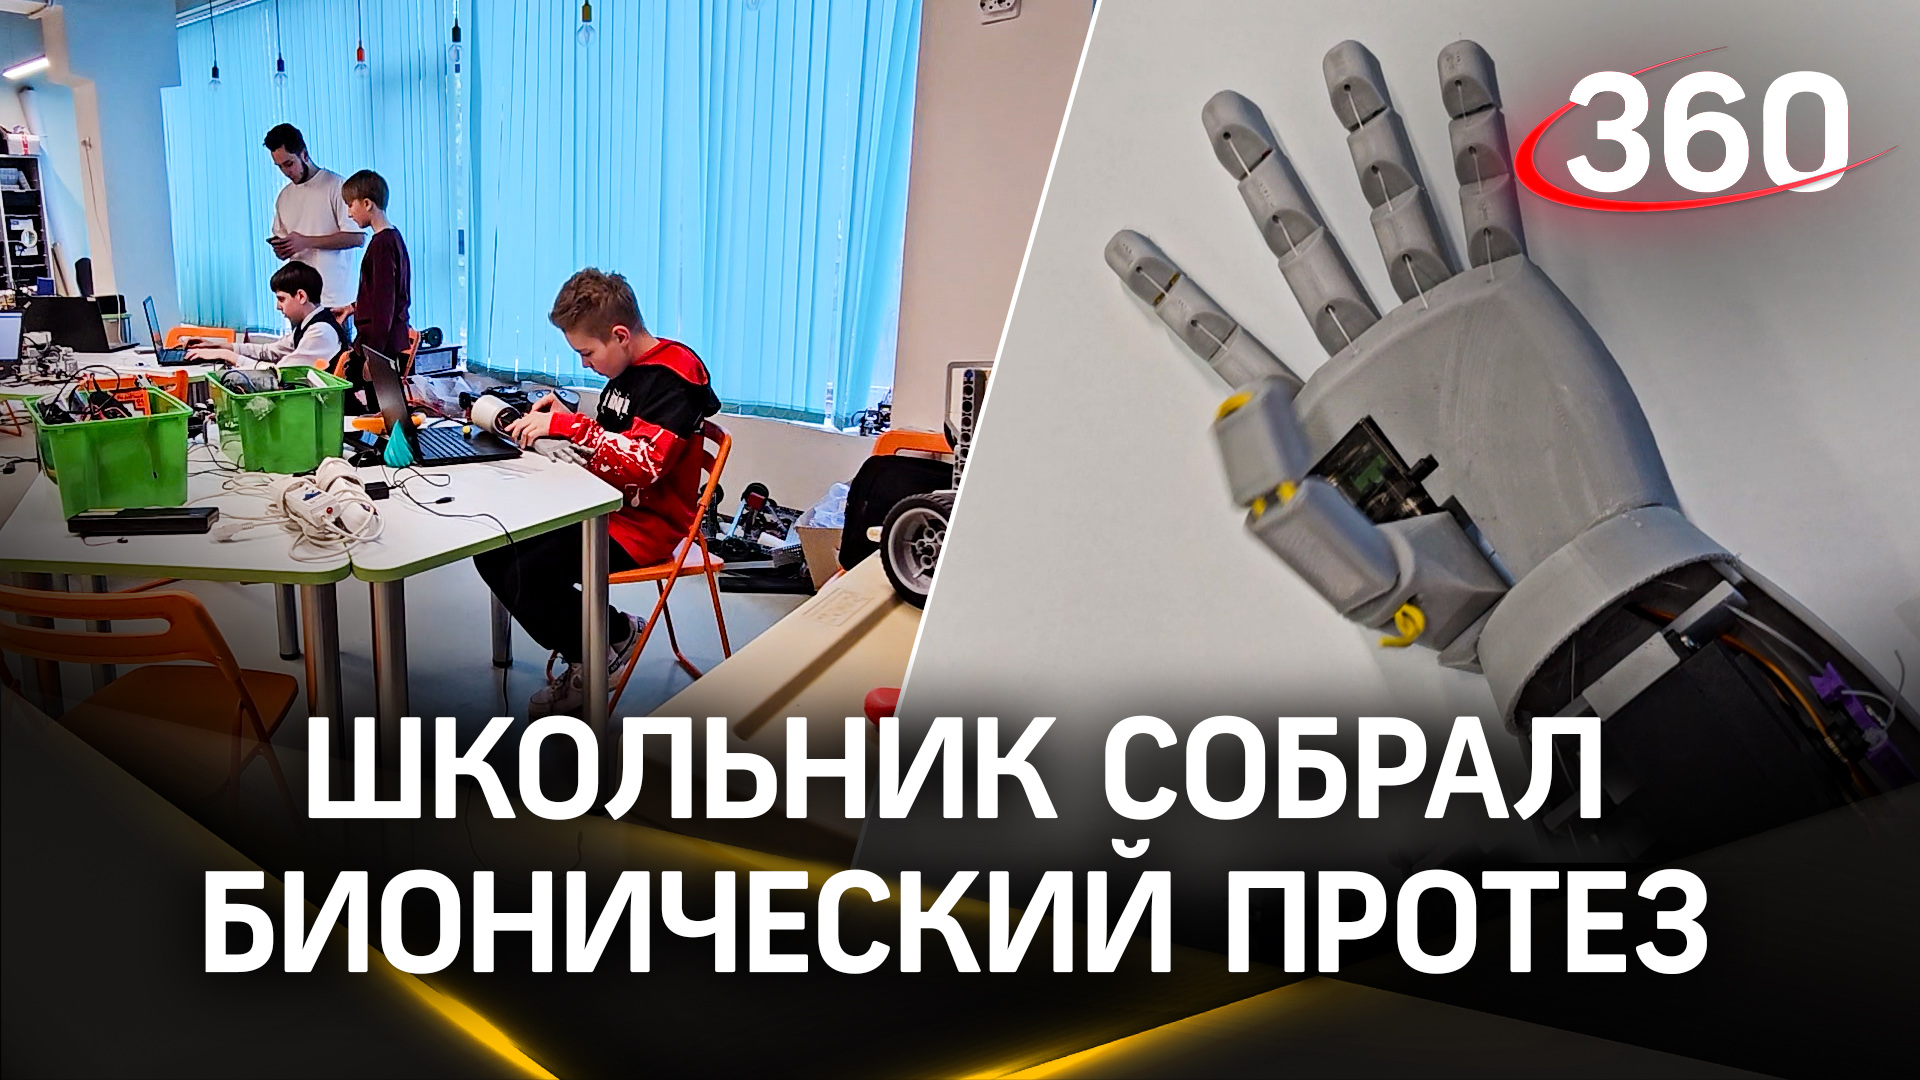 Бионическая рука вместо протеза: уникальная разработка юного изобретателя из Подмосковья